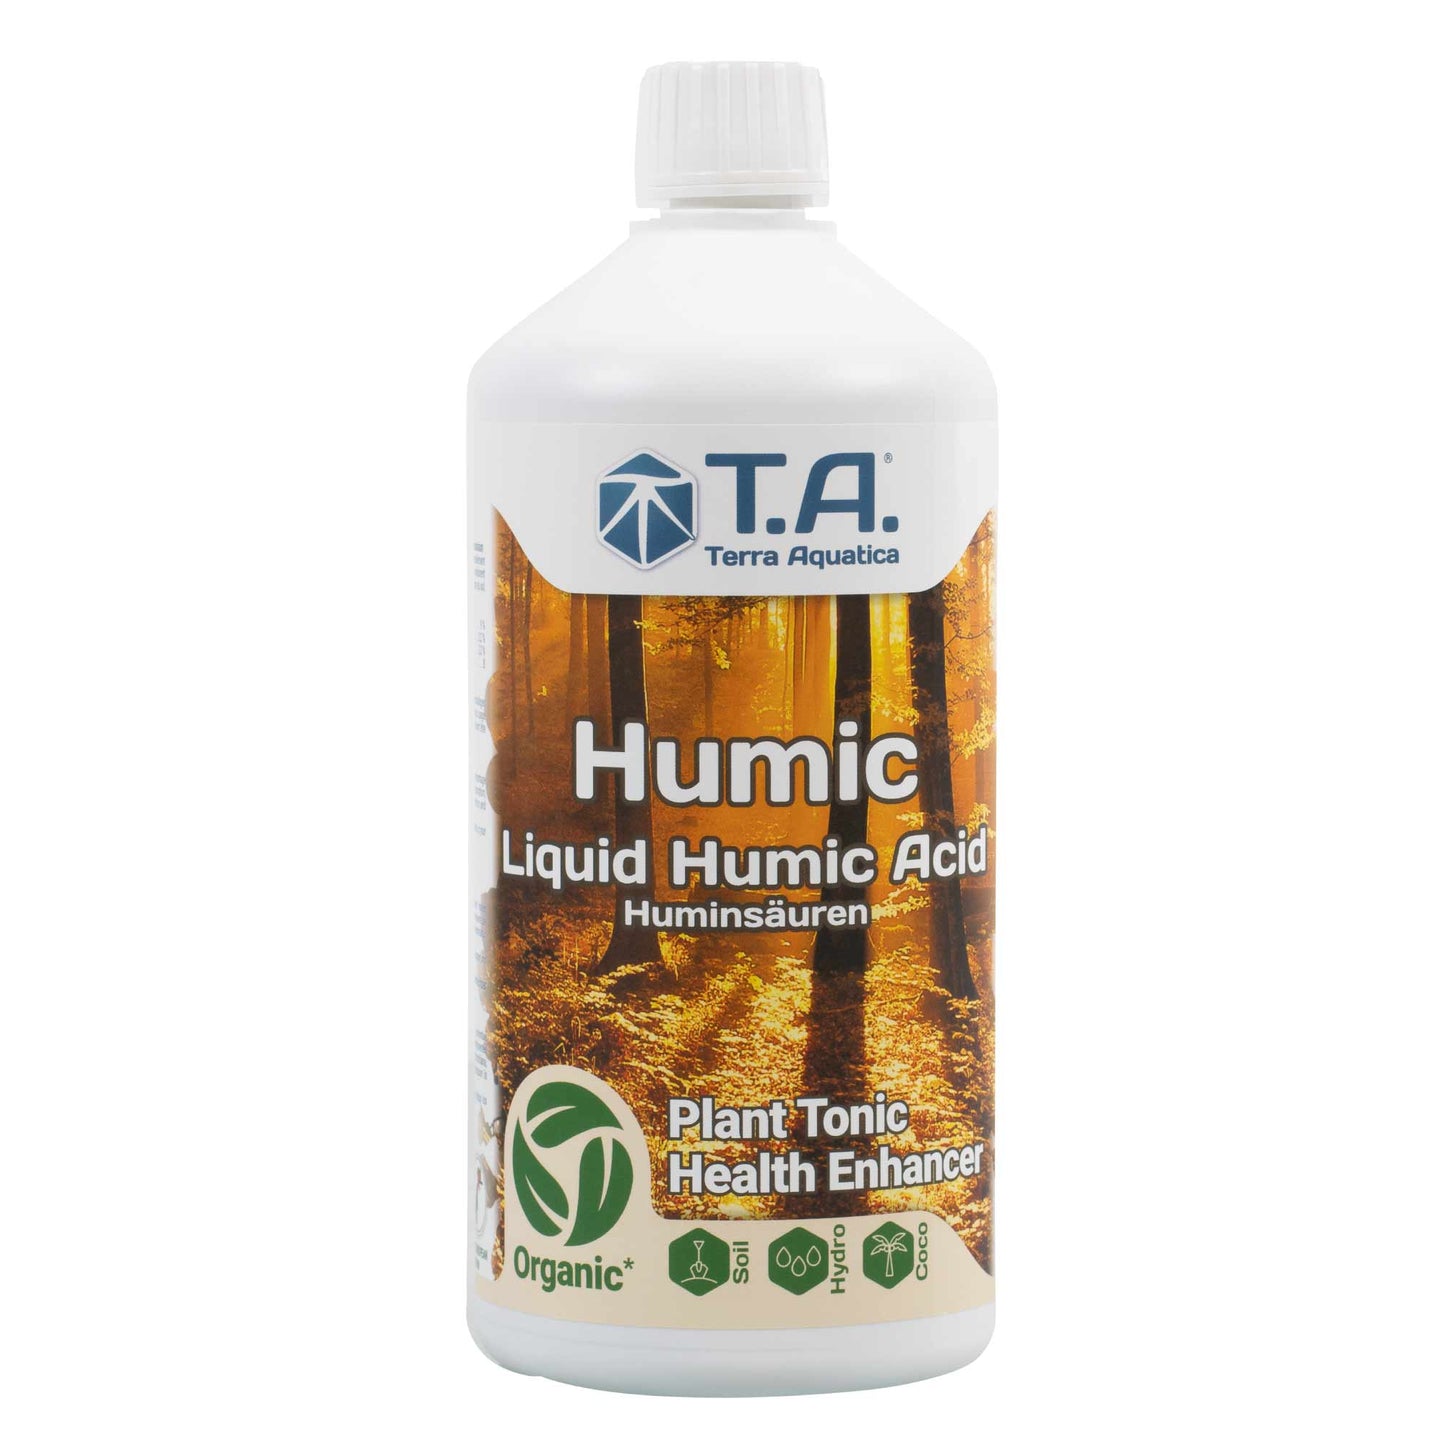 T.A. (新 GHE) 100%オーガニック フミン酸サプリメント HUMIC Plant Tonic Health Enhancer